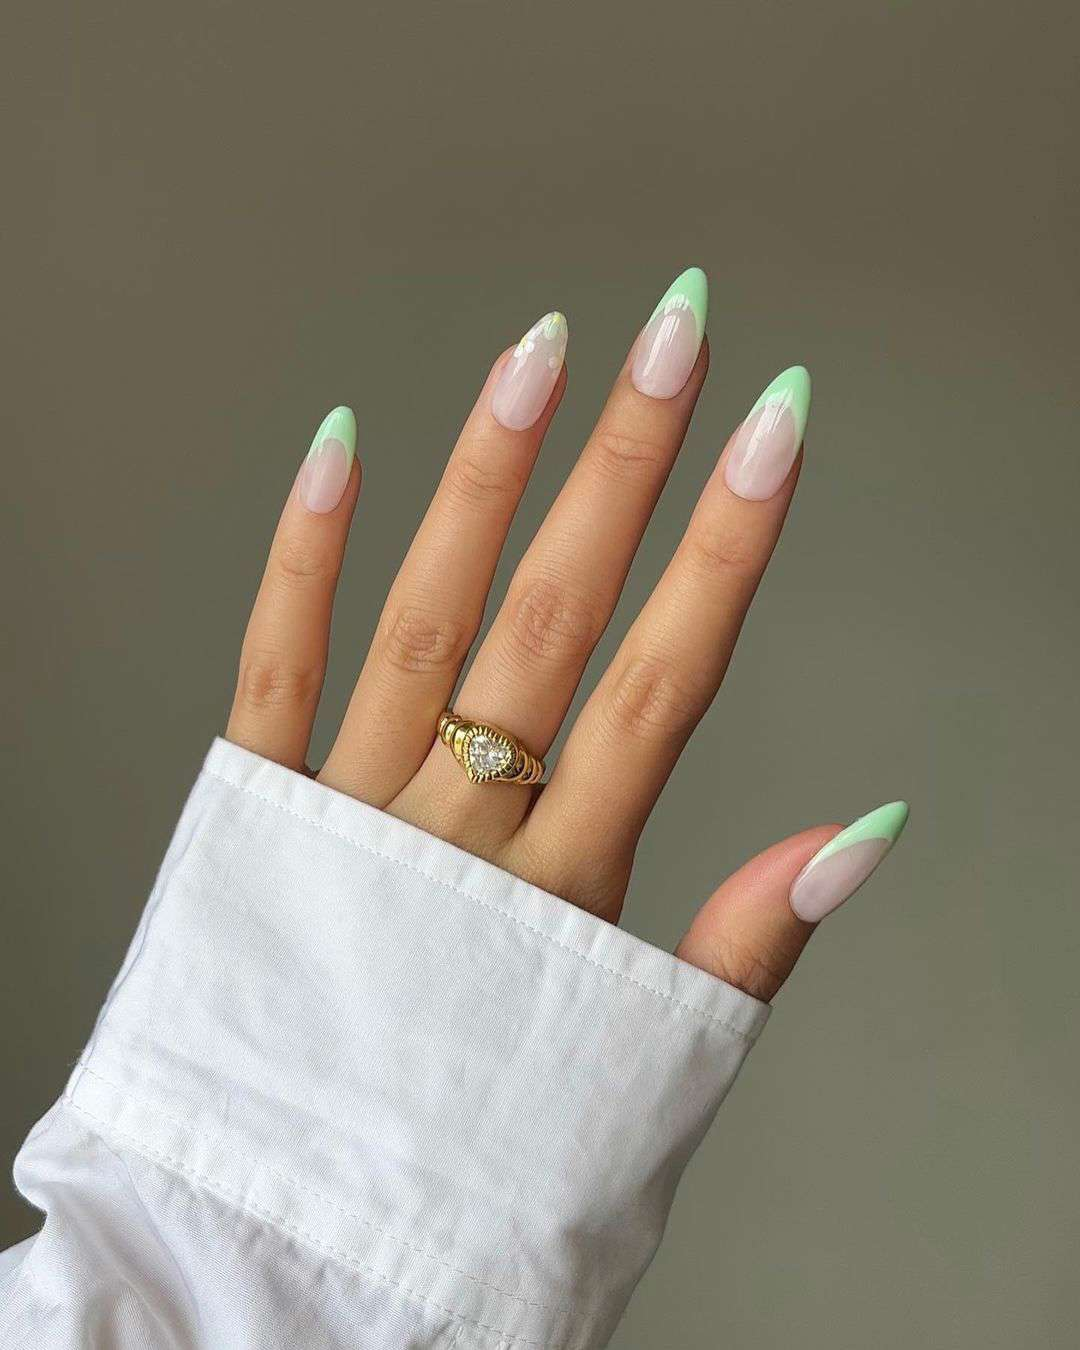 5 colores de uñas que es mejor reservar: verde menta